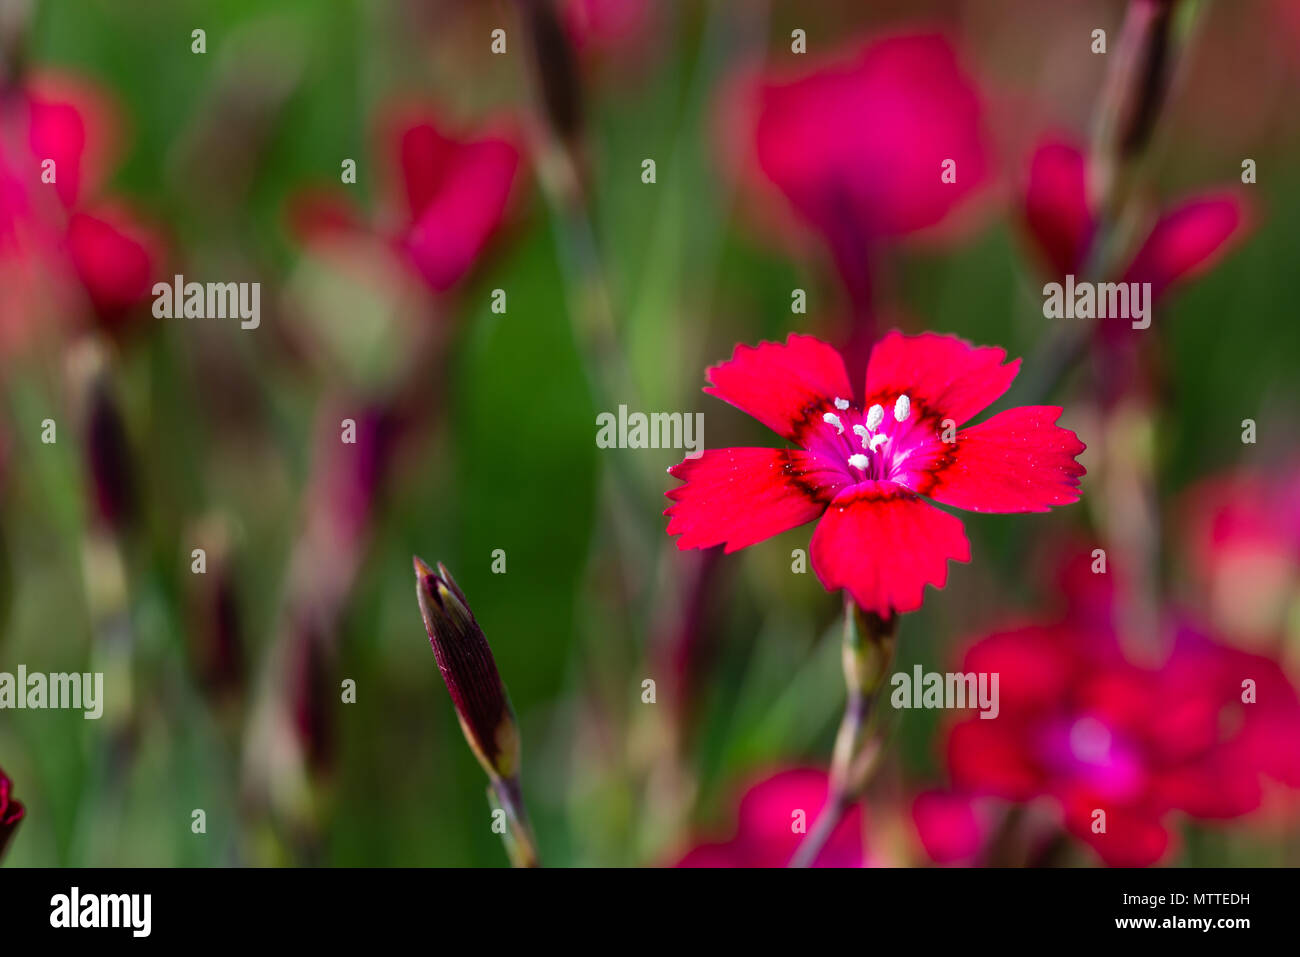 Foto orizzontale con bel rosso fioritura di piccoli fiori di garofano. Bloom ha un bel centro con i pistilli coperti da polen. Fioriture di altre piante sono in bac Foto Stock